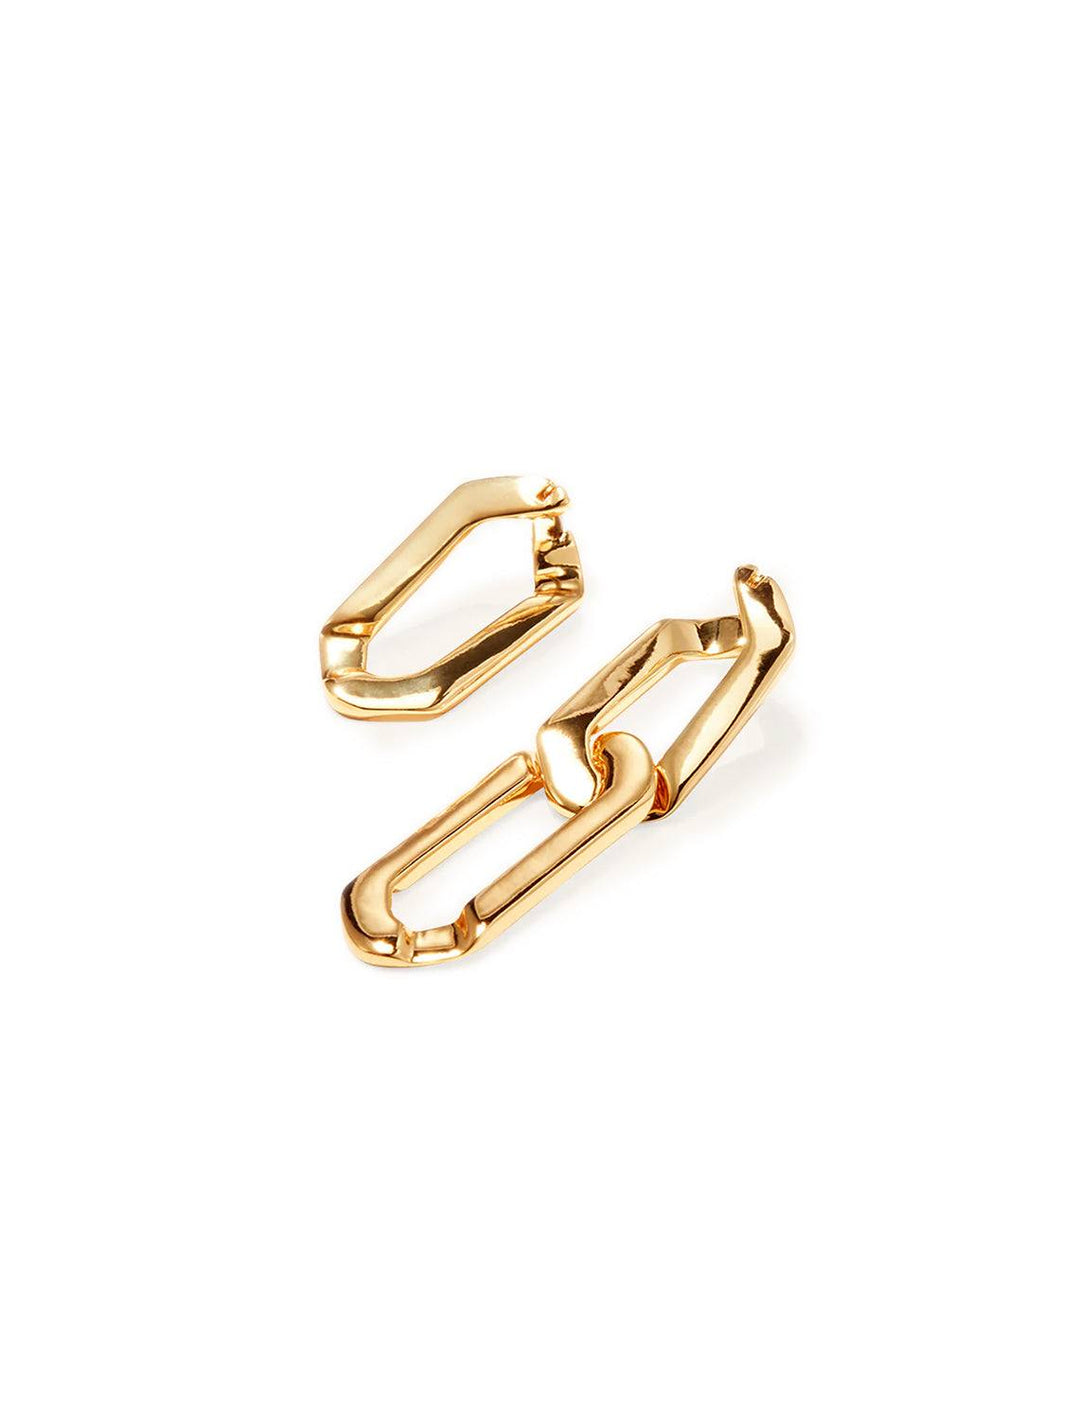 Stylized laydown of Jenny Bird's rafael earrings in gold.